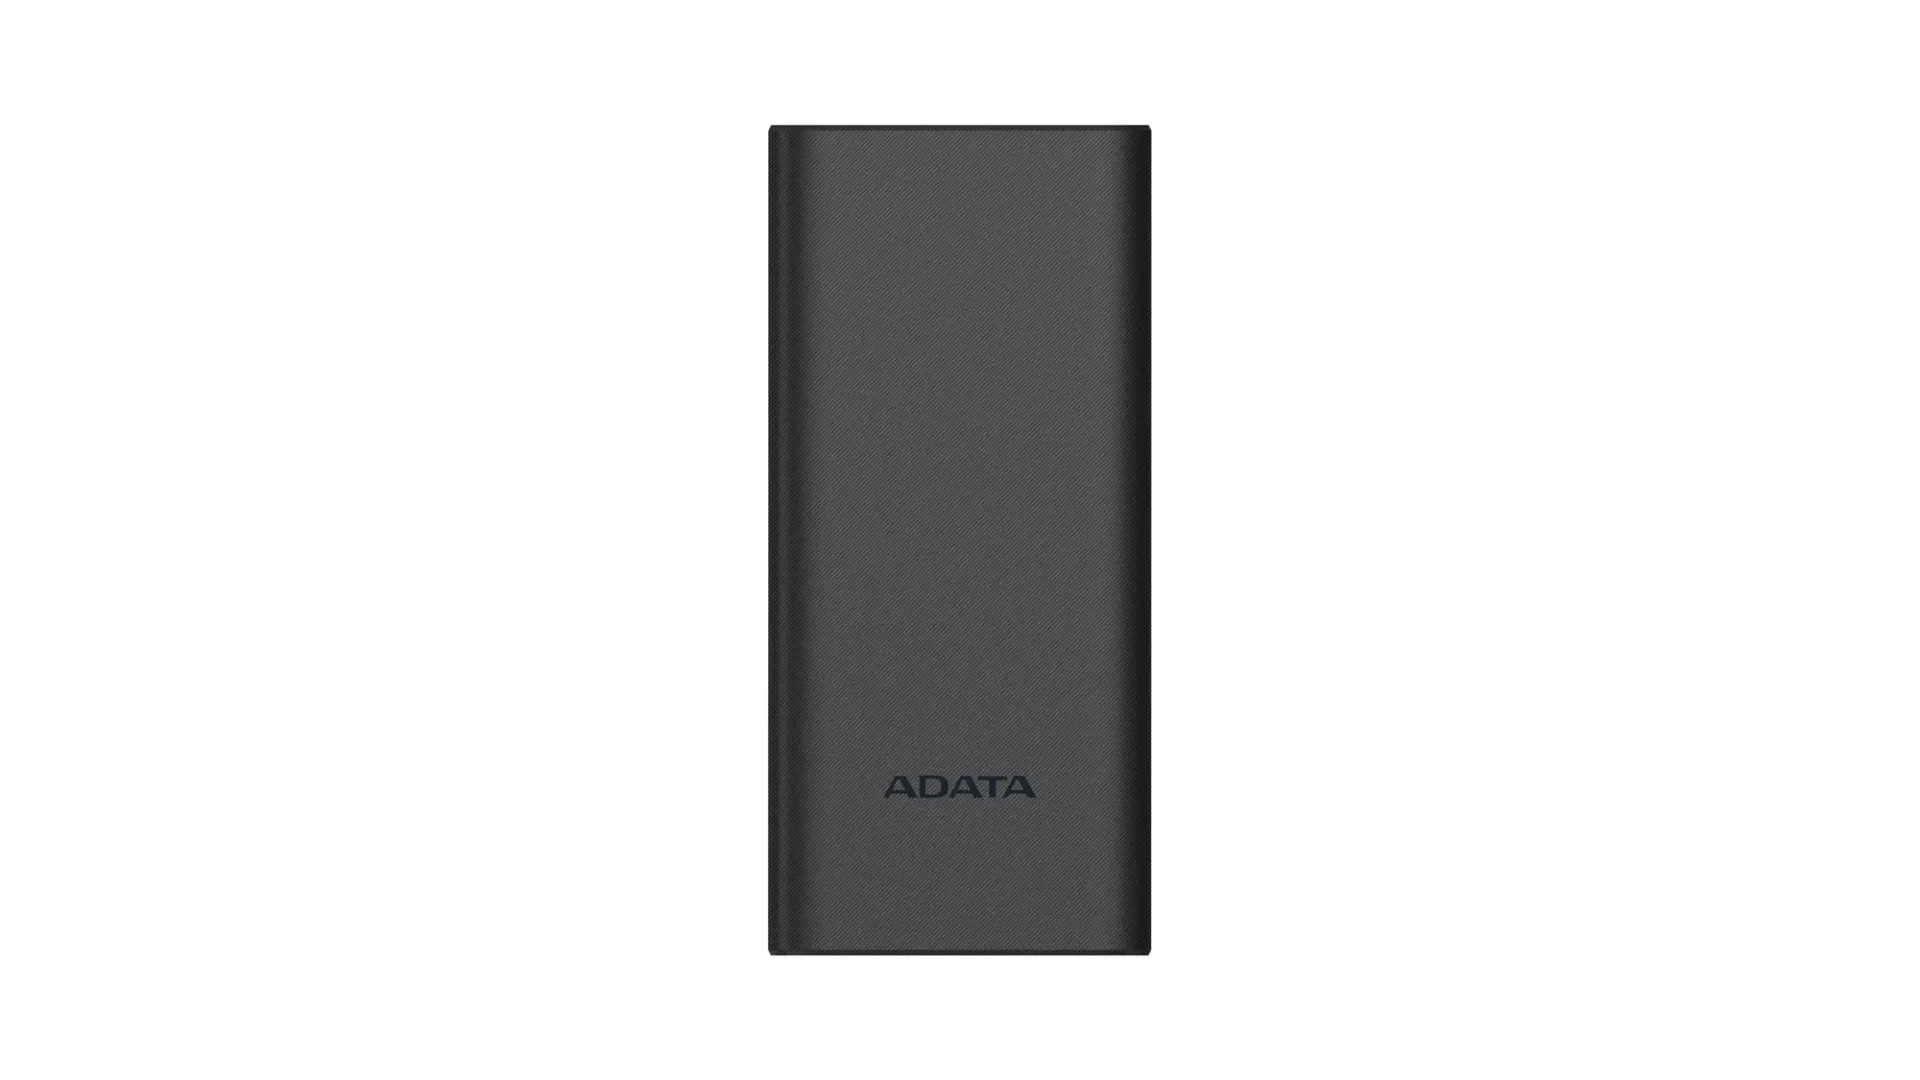 ADATA запустила в продажу новые внешние аккумуляторы на 10000 и 20000 мАч